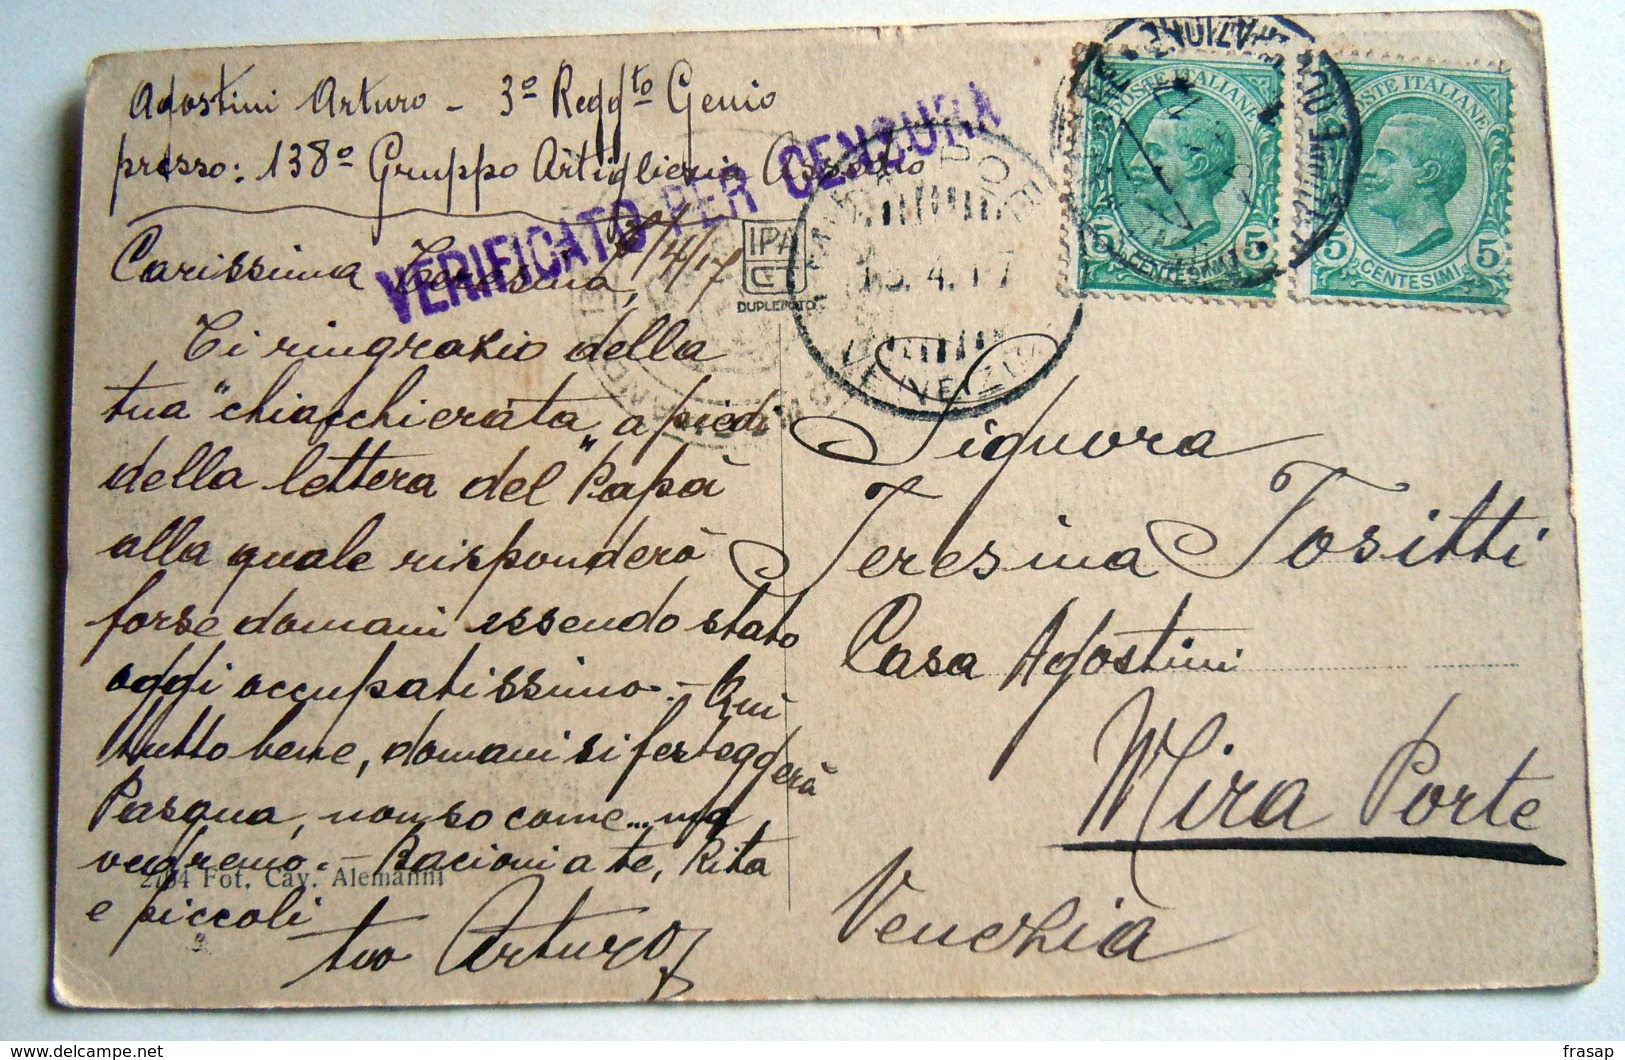 Albania / Shkodra  VALONA CARROZZELLE   MILITARI  - WWI POSTA MILITARE TRUPPE OCCUPAZIONE -   1917 - Albania